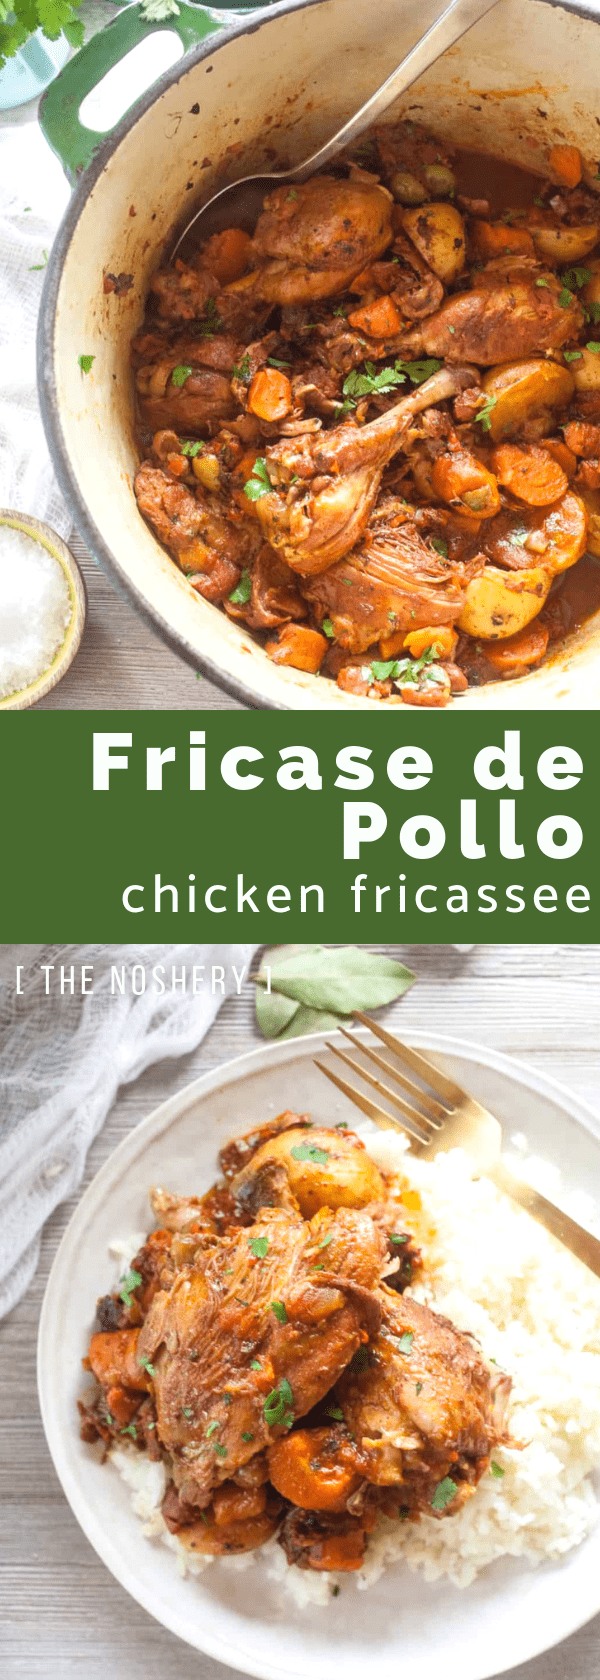 Chicken Fricassee (Fricase de Pollo) - The Noshery